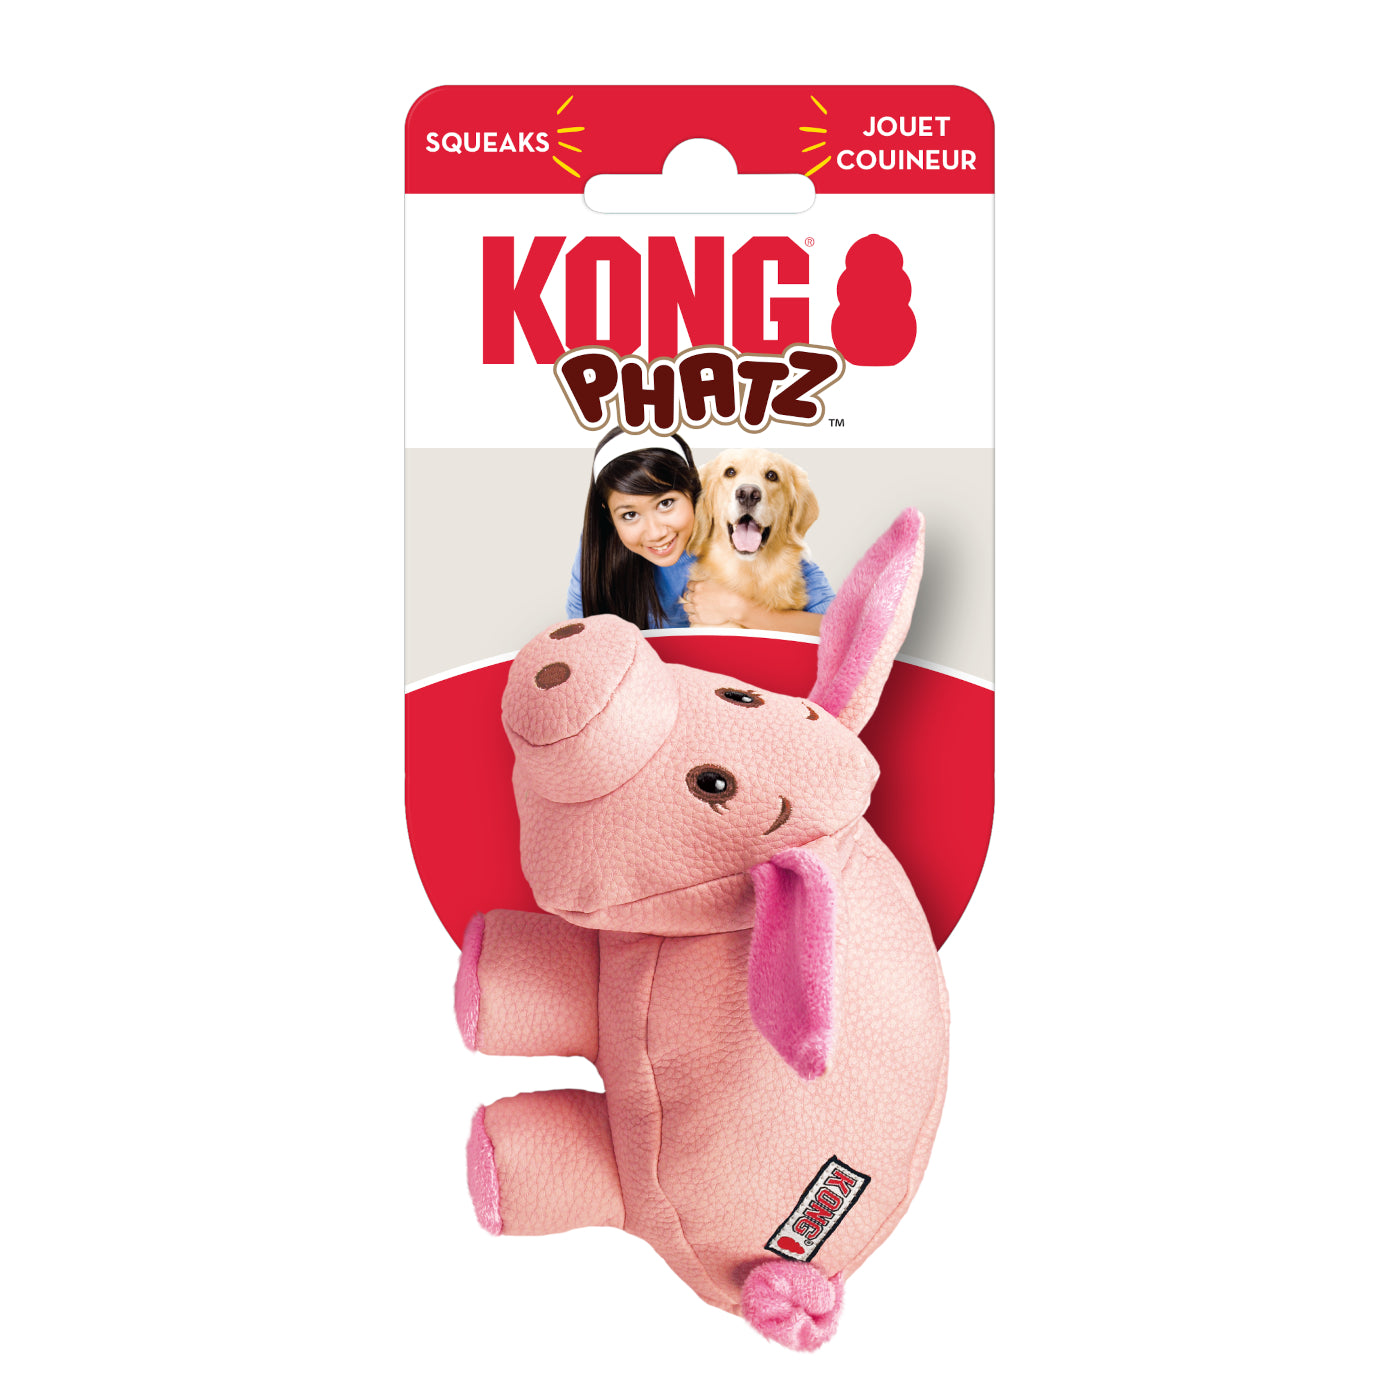 KONG Phatz Pig